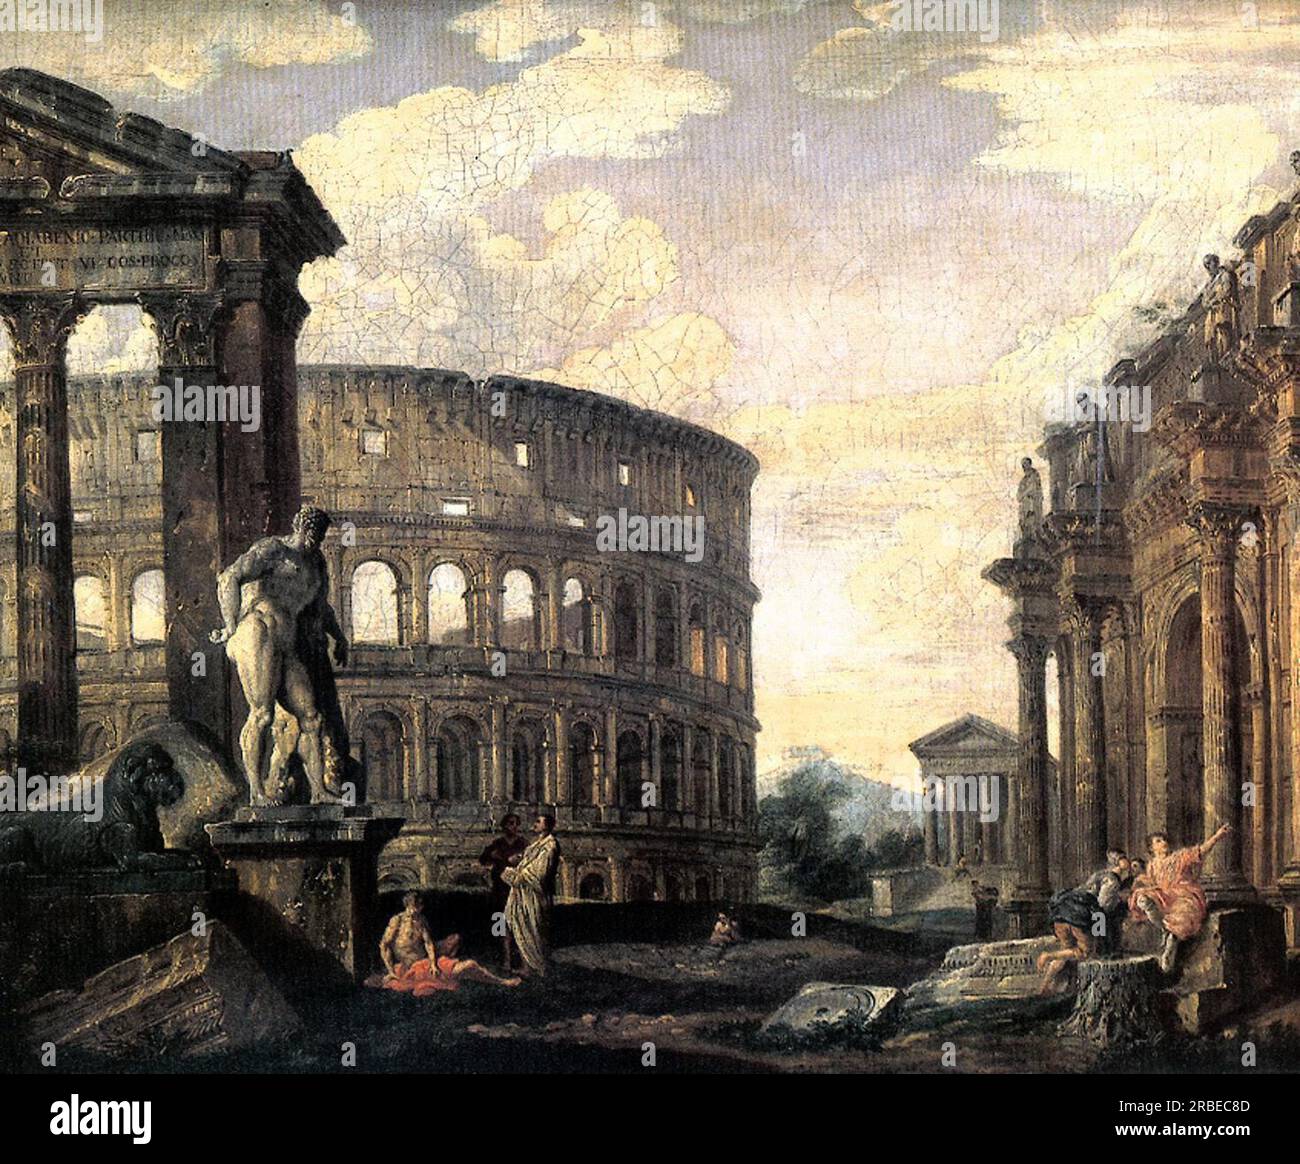 acuarela de detalle de ruinas templo romano, 42 - Buy Contemporary  watercolors of the XX century on todocoleccion